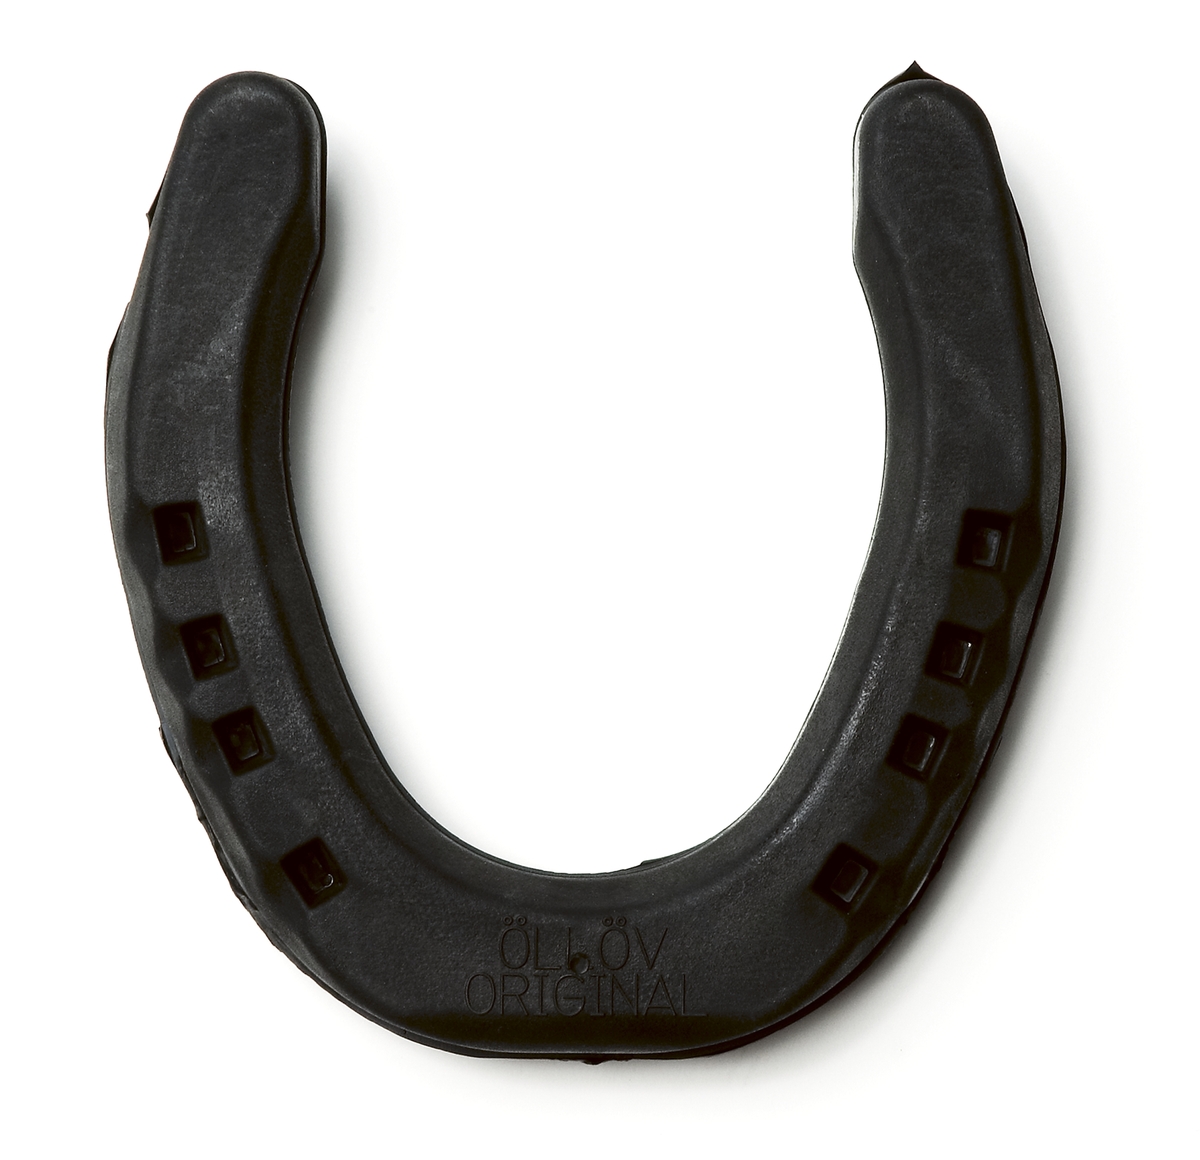 12 hästskor av gummi och stål. 3 storleksuppsättningar. Hästskorna består av en 5 mm tjock stålkärna med tå och sidokappor som också är i stål. Mellan hov och stålskena är skon klädd i 1 mm gummi och mellan stålkärnan och marken är hästskon klädd med ett gummilager på 5 mm.